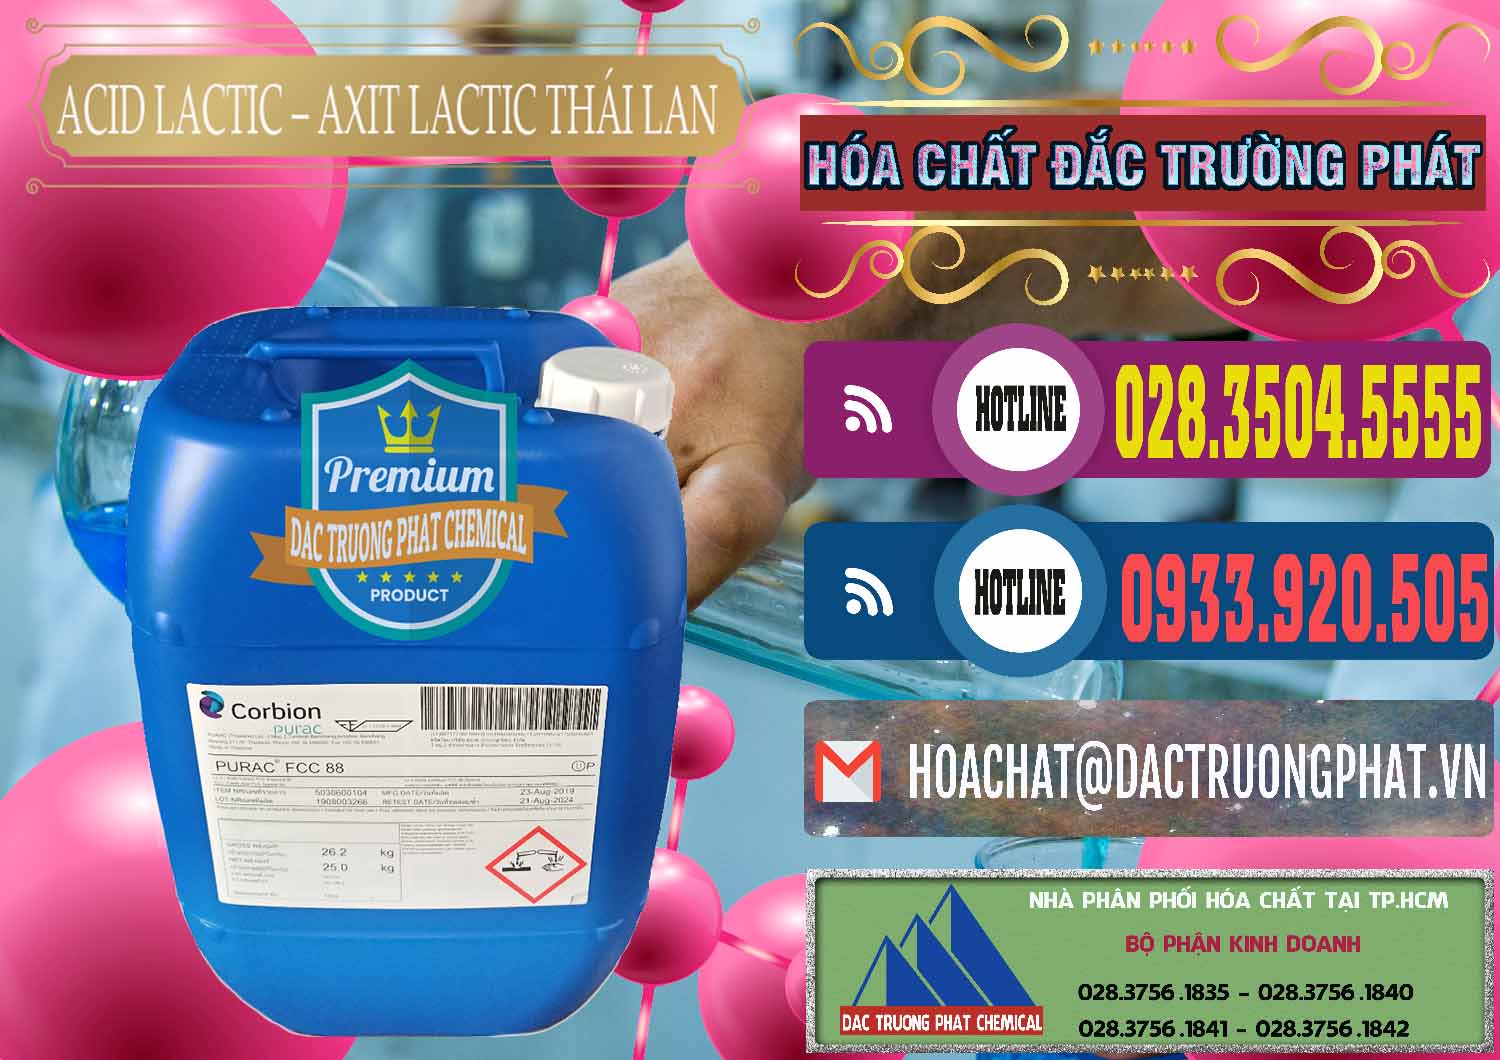 Chuyên kinh doanh _ bán Acid Lactic – Axit Lactic Thái Lan Purac FCC 88 - 0012 - Cty chuyên cung cấp và kinh doanh hóa chất tại TP.HCM - muabanhoachat.com.vn